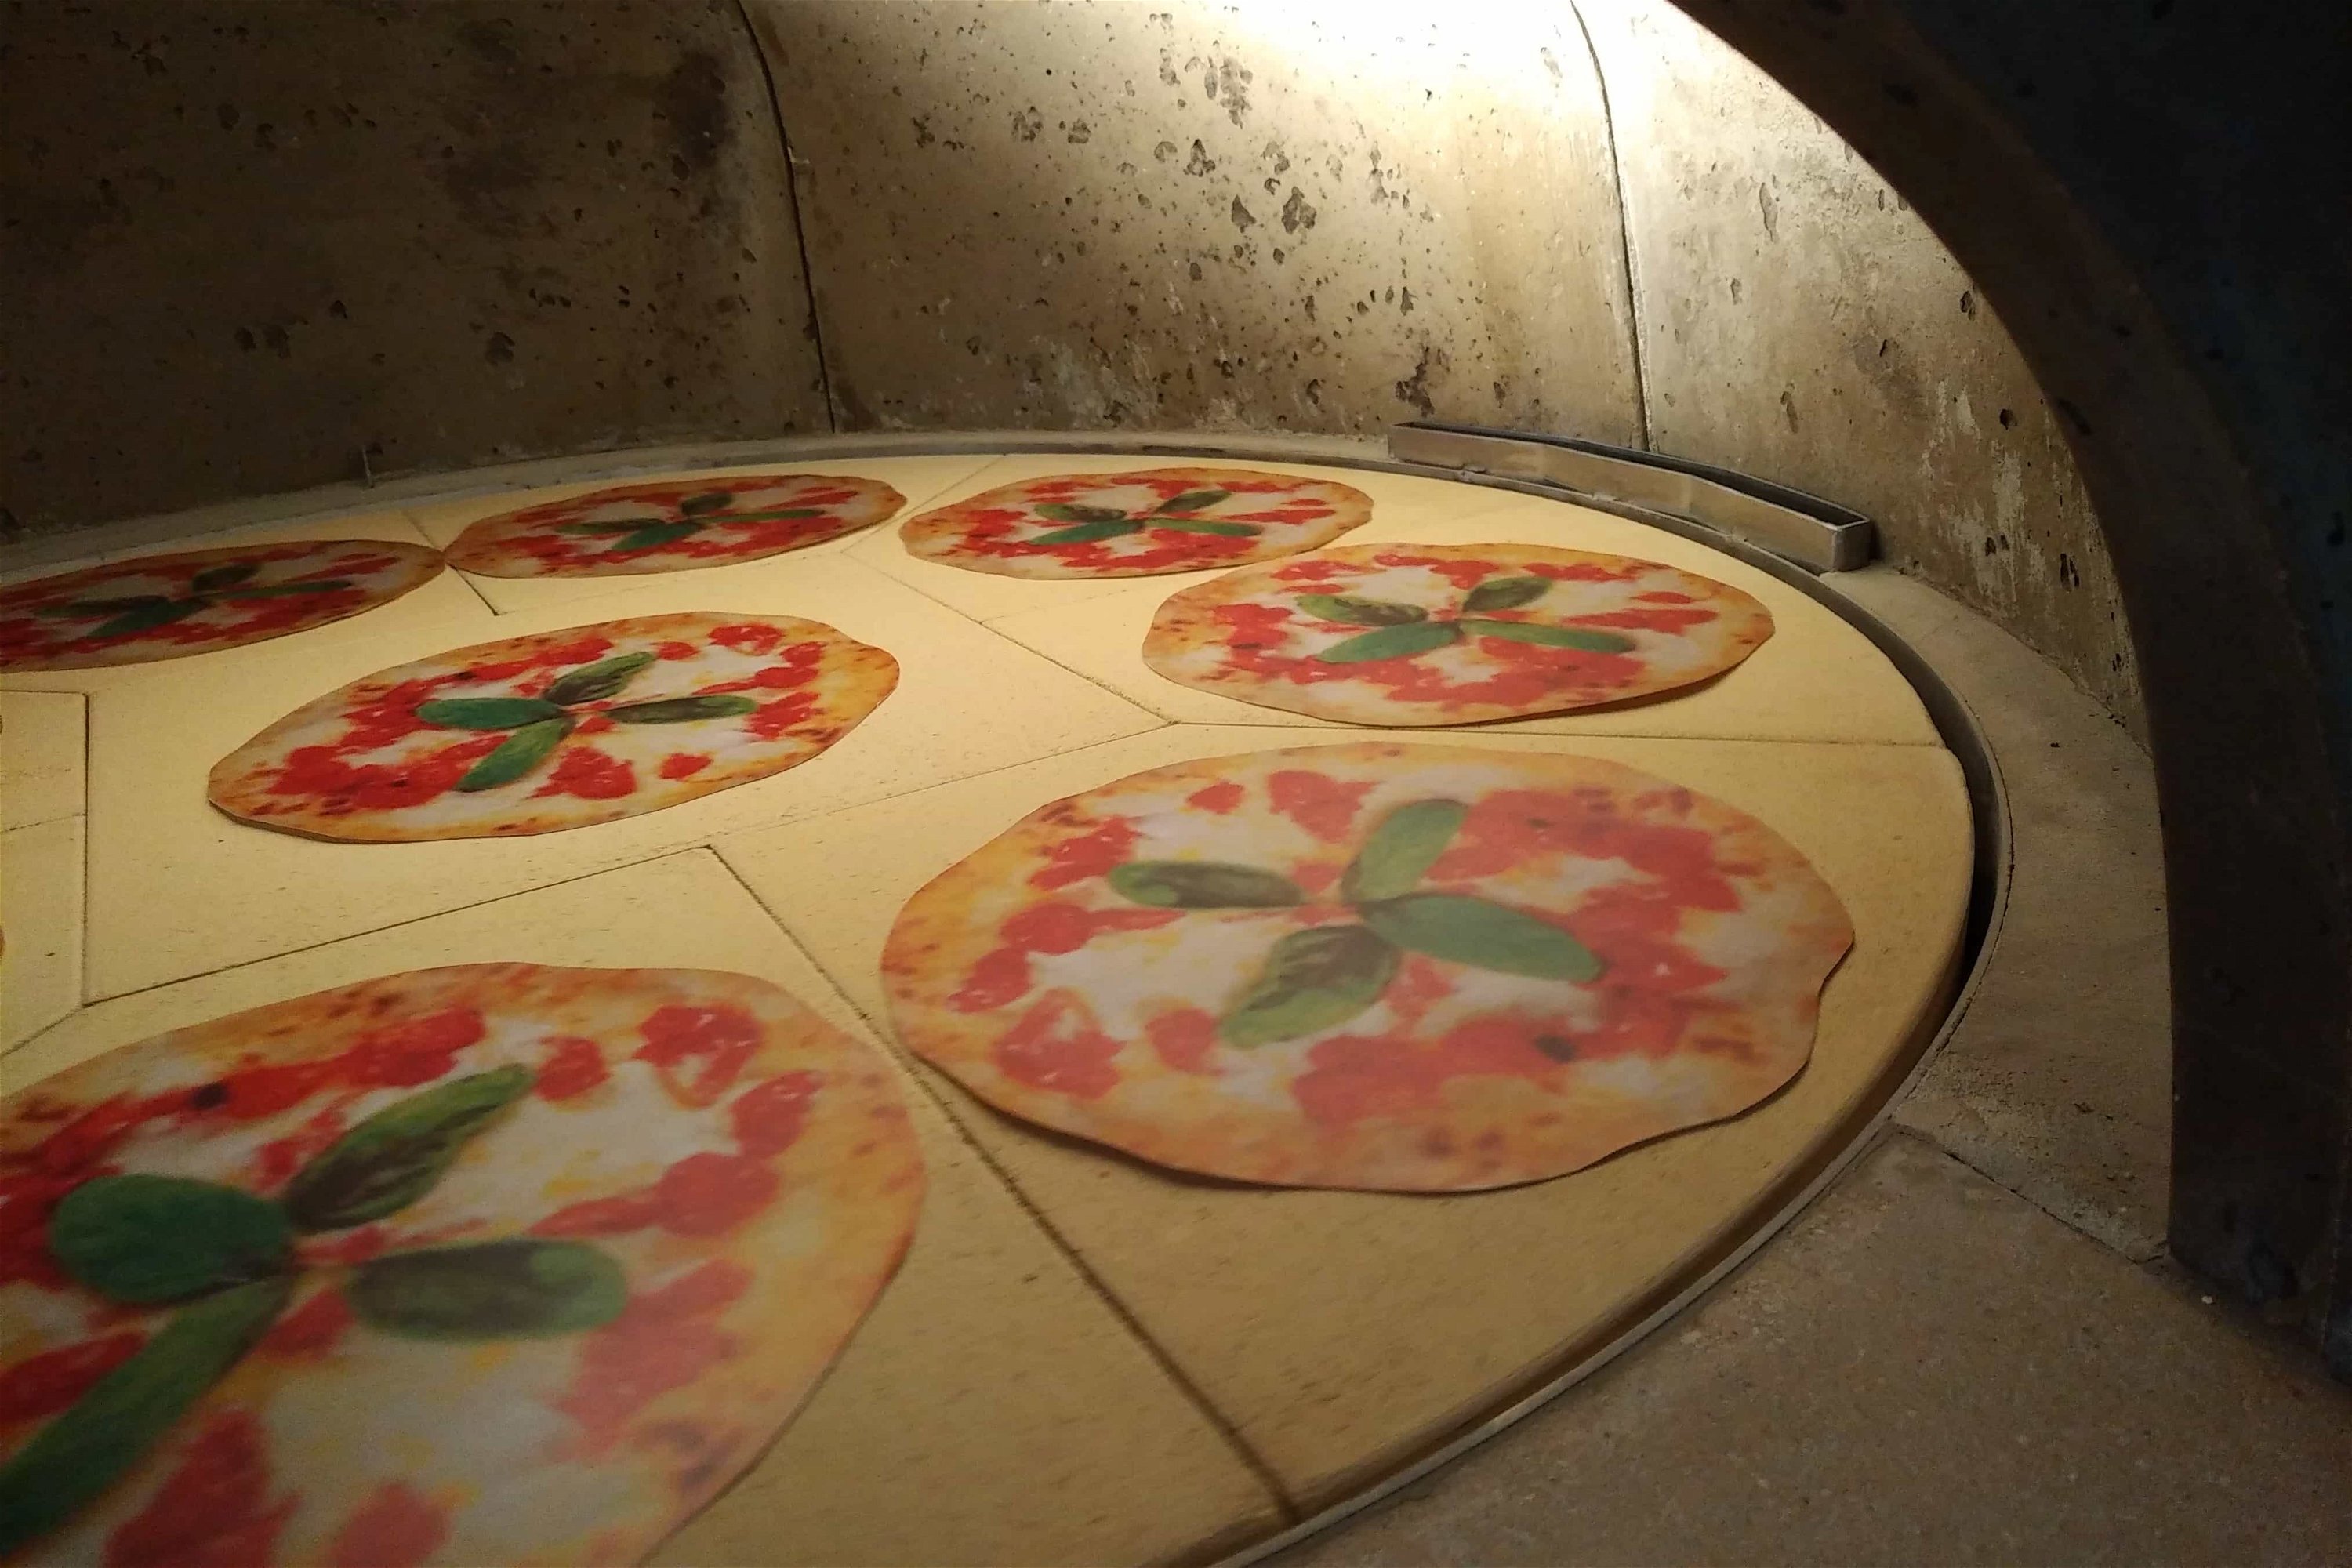 Holzbackofen Valoriani Rotativo: rotierender Pizzaofen, rund, 90cm Durchmesser, für Gastro